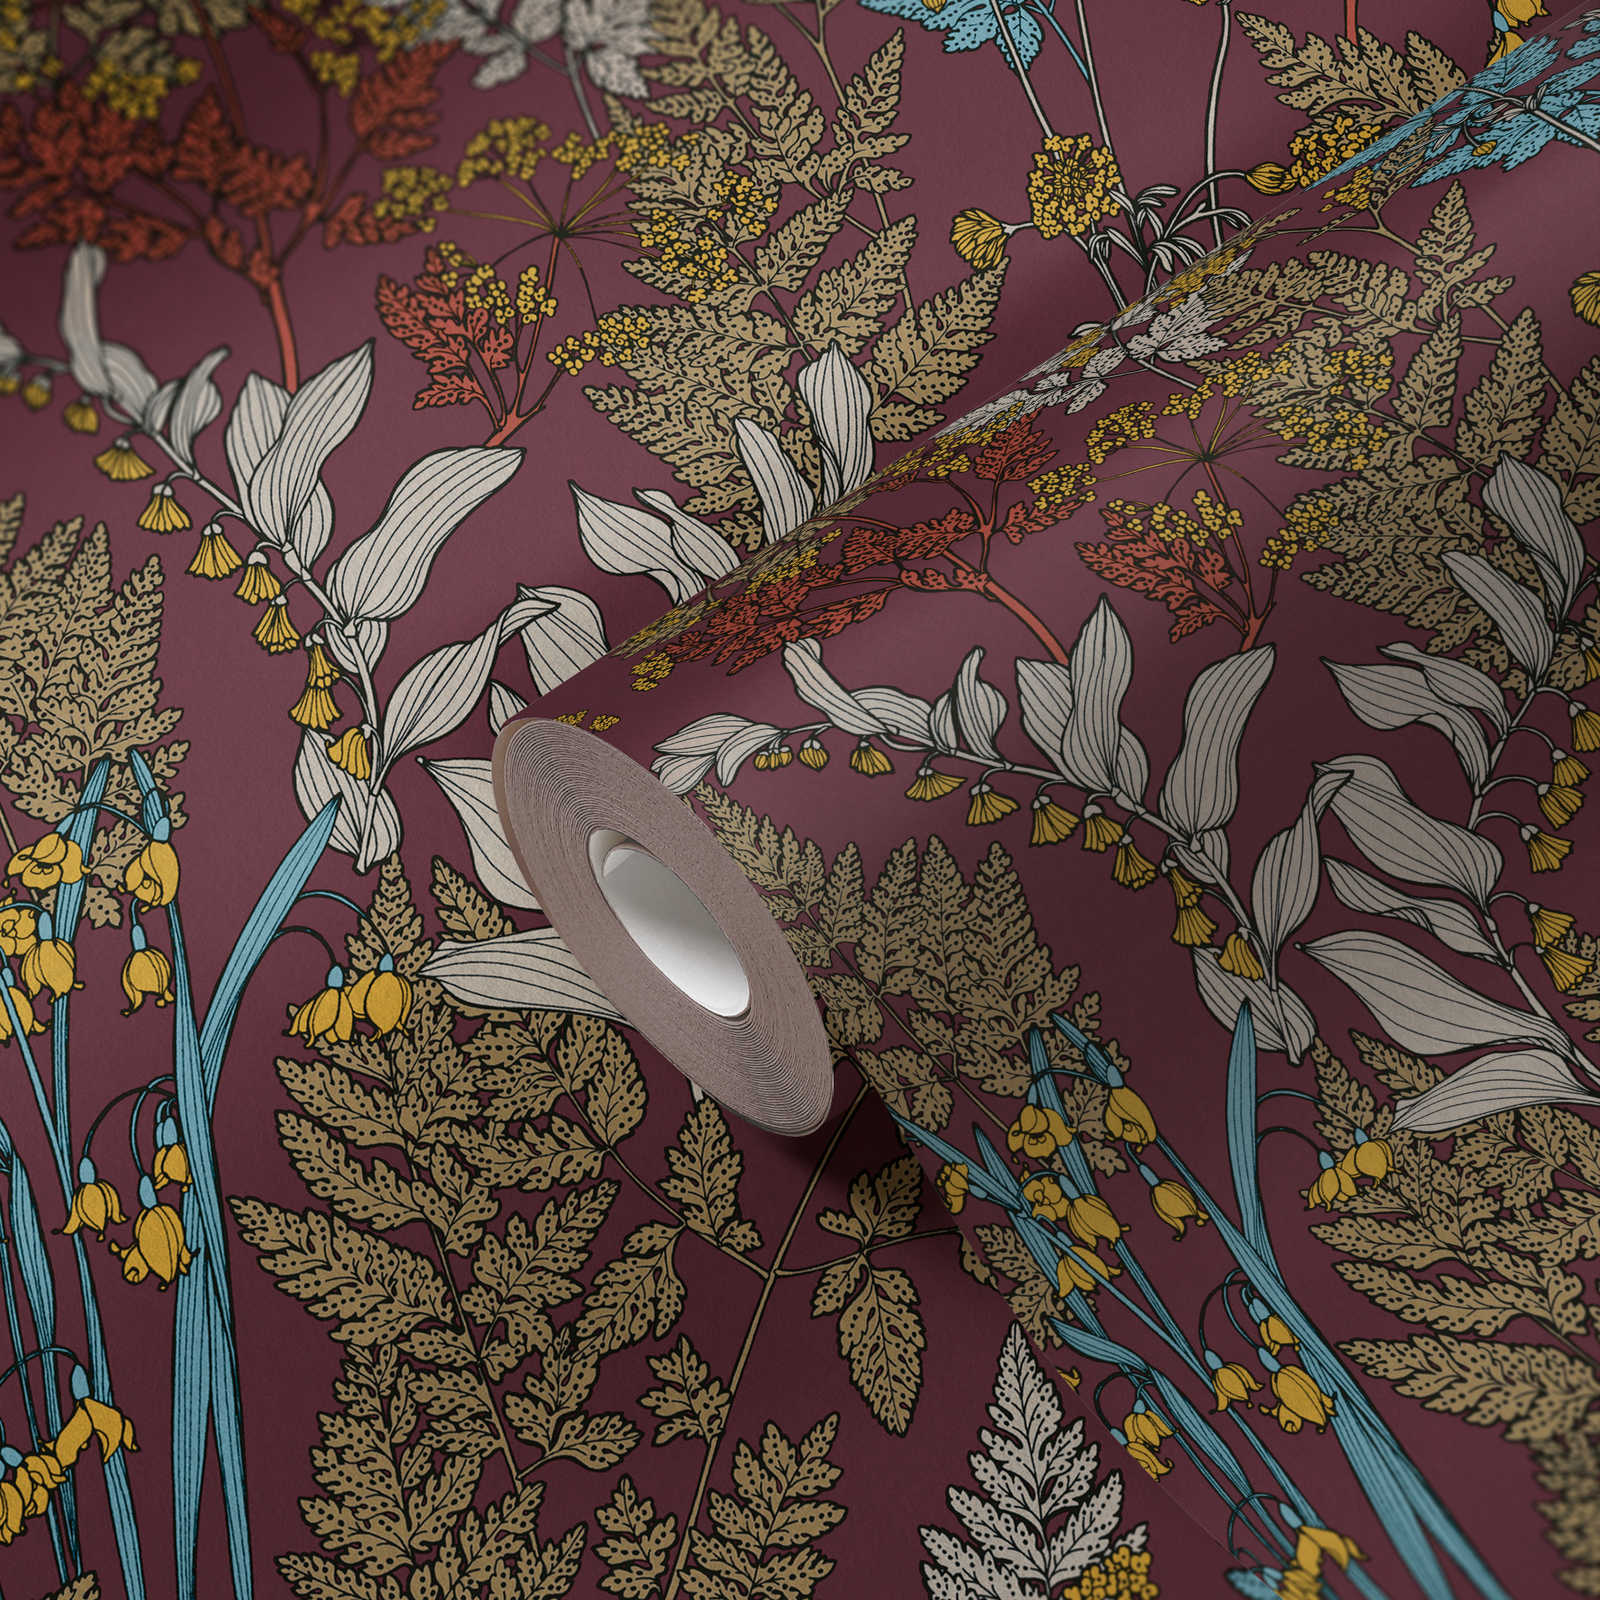             Lila Tapete mit buntem Blätter & Blumen Design – Rot, Gelb, Blau
        